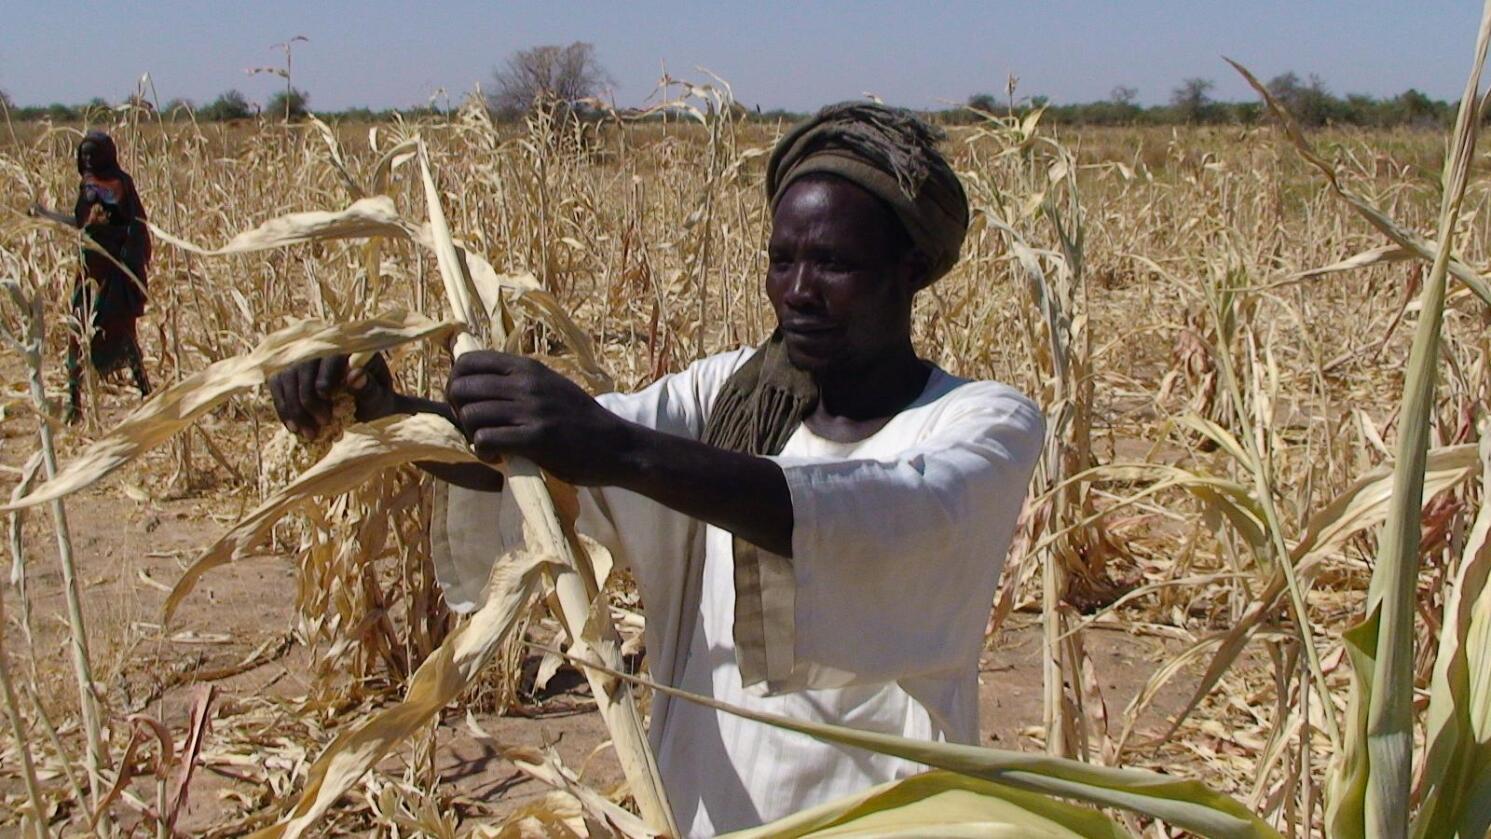 Avlingssvikt: Tørke, som hos Goutrane Saleh i Tsjad, presser matlagre og destabiliserer markedet Norge er avhengig av. Foto: Irina Fuhrmann/Oxfam.